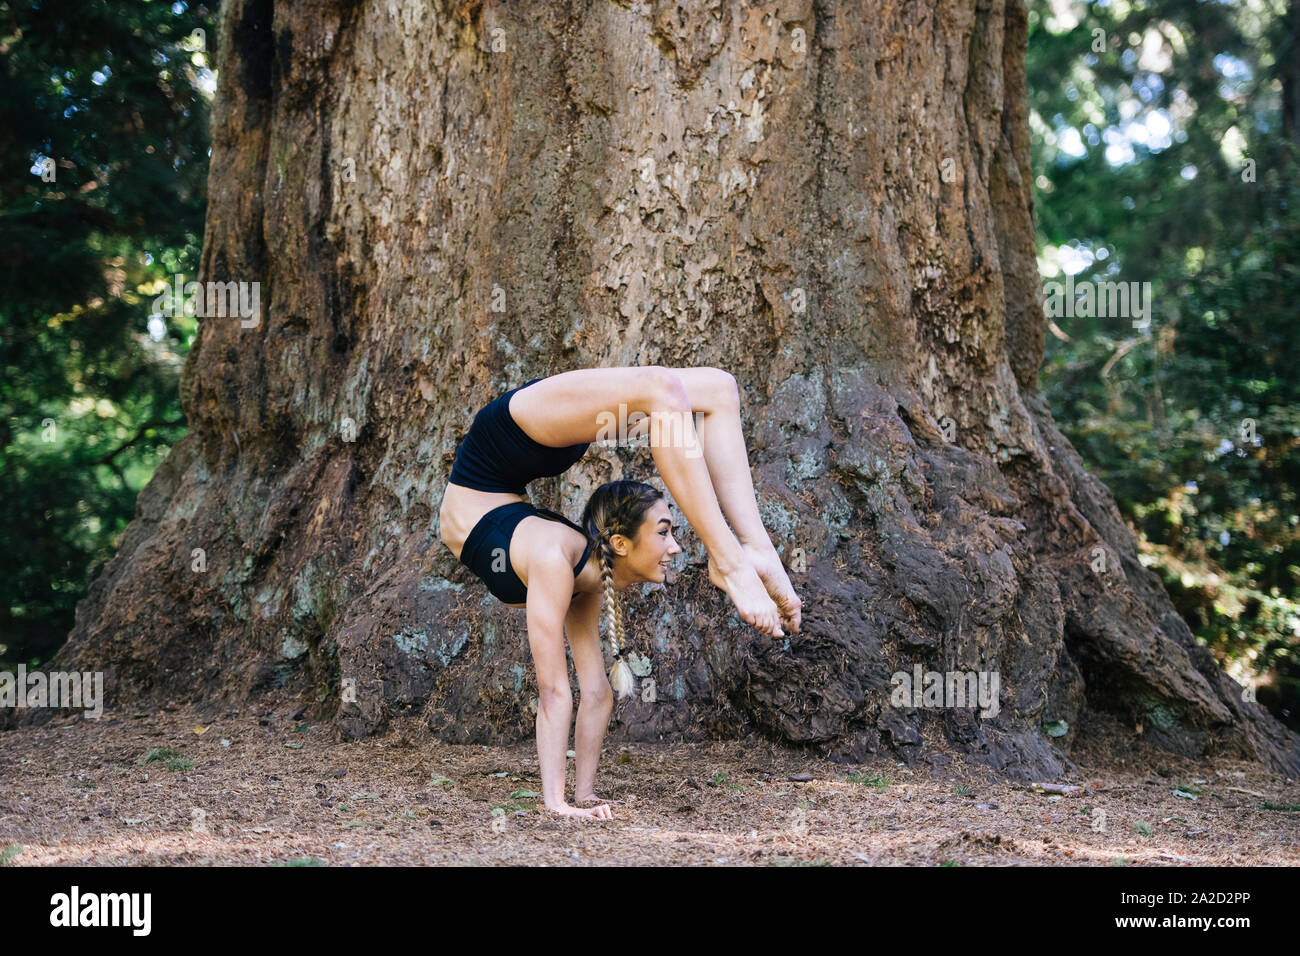 Woman doing yoga below giant sequoia, Tacoma, Washington State, USA Stock Photo